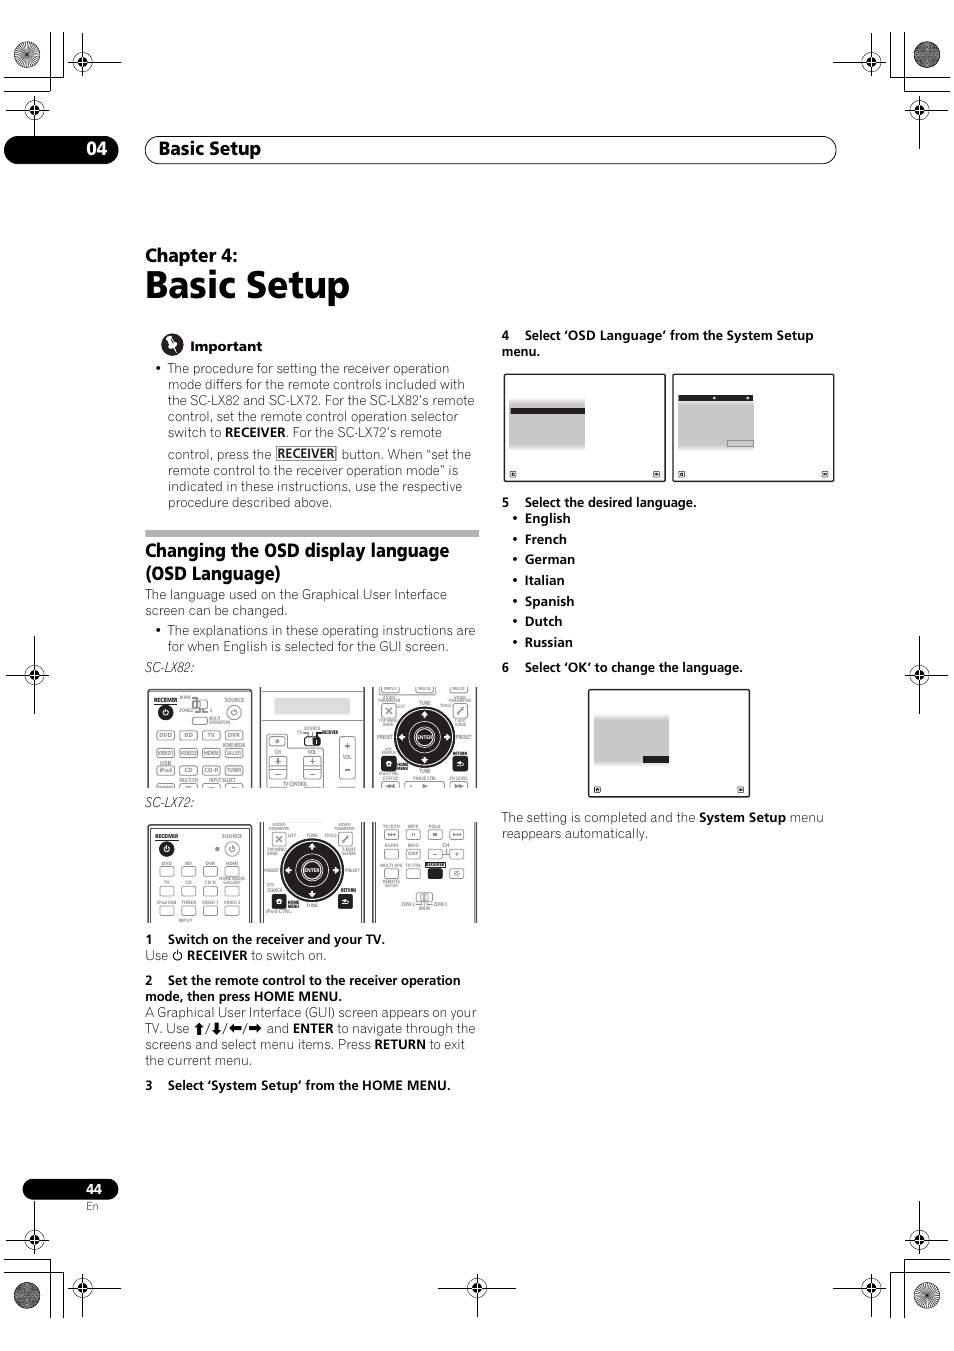 Basic setup, Changing the osd display language (osd language), Basic